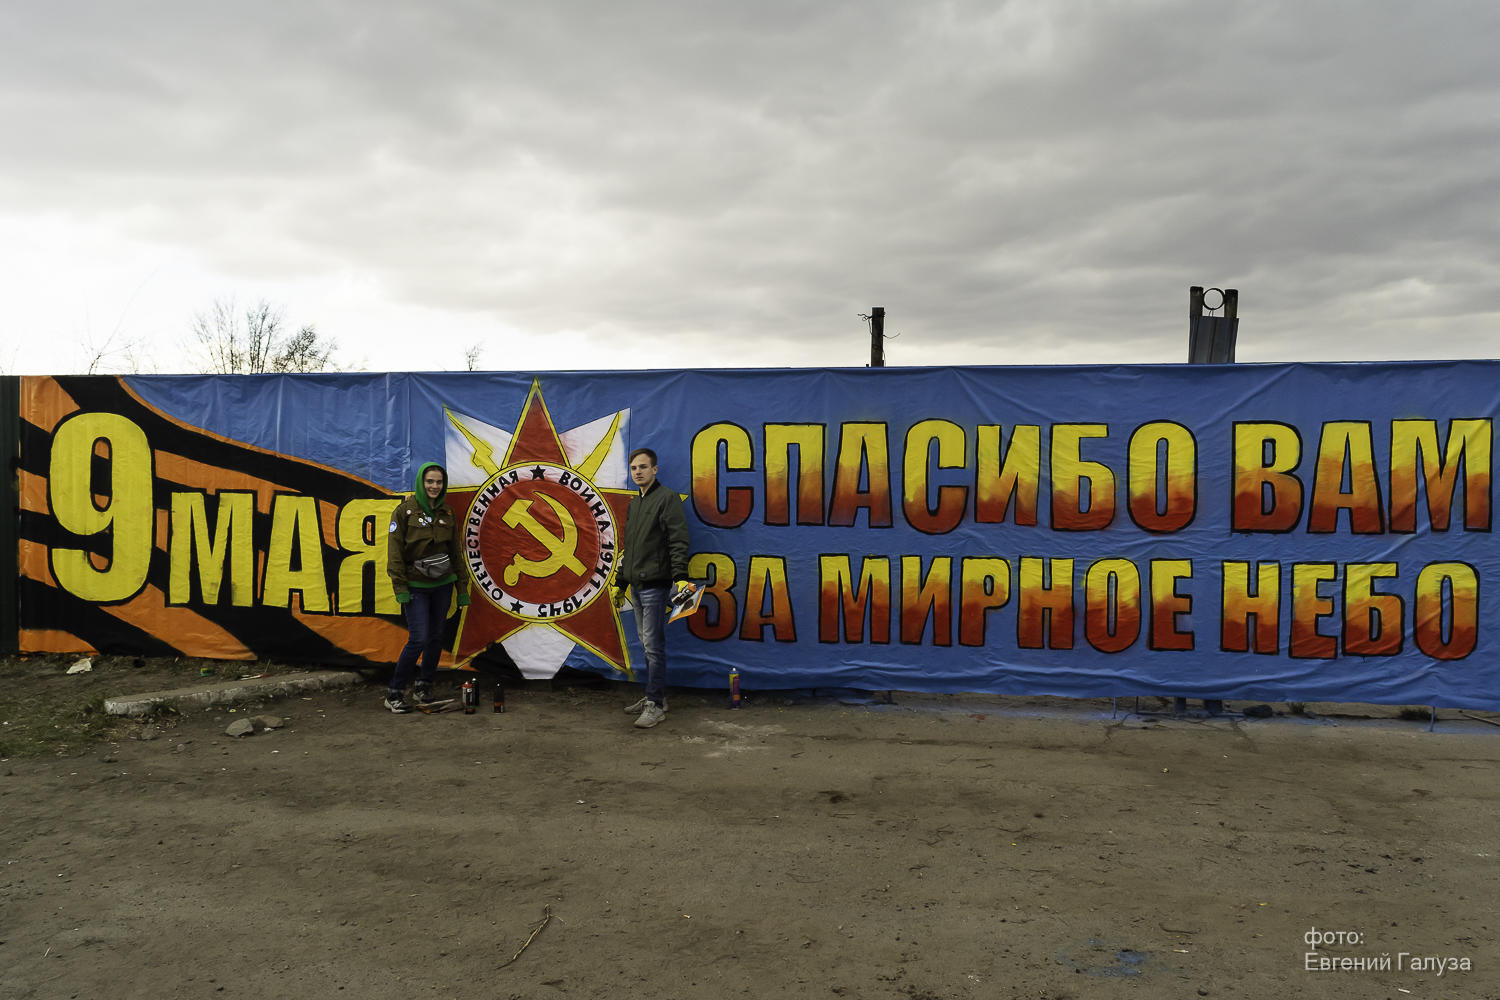 Граффити-баннер сделала молодежь Читы по маршруту шествия «Бессмертного полка»